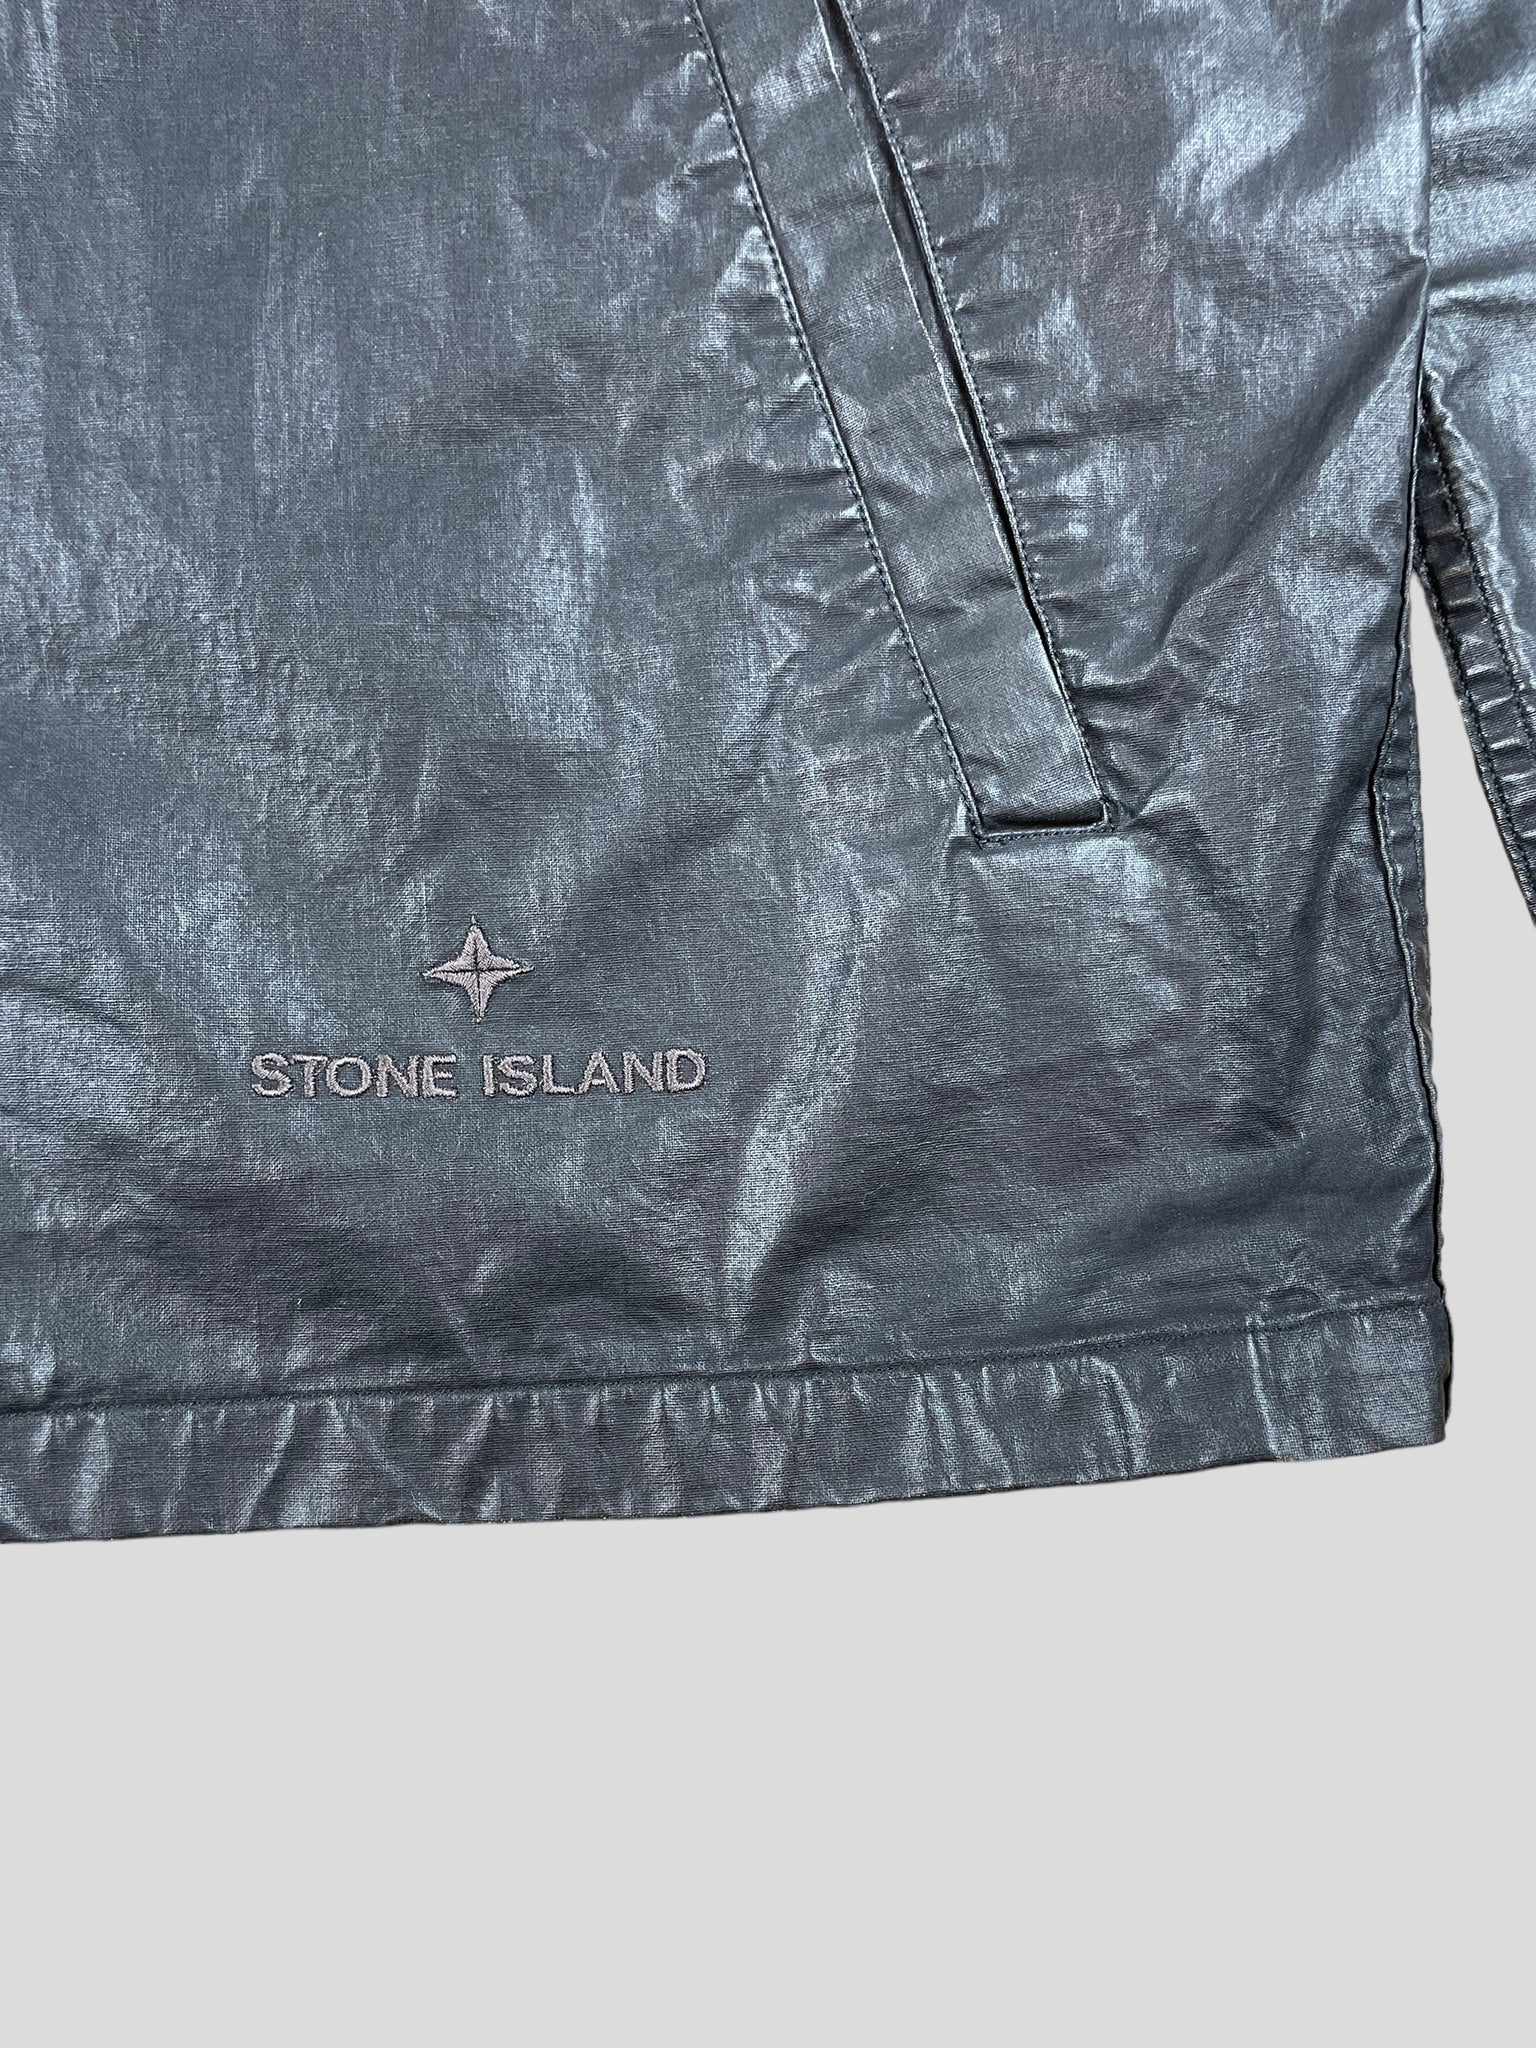 Stone Island Jacket